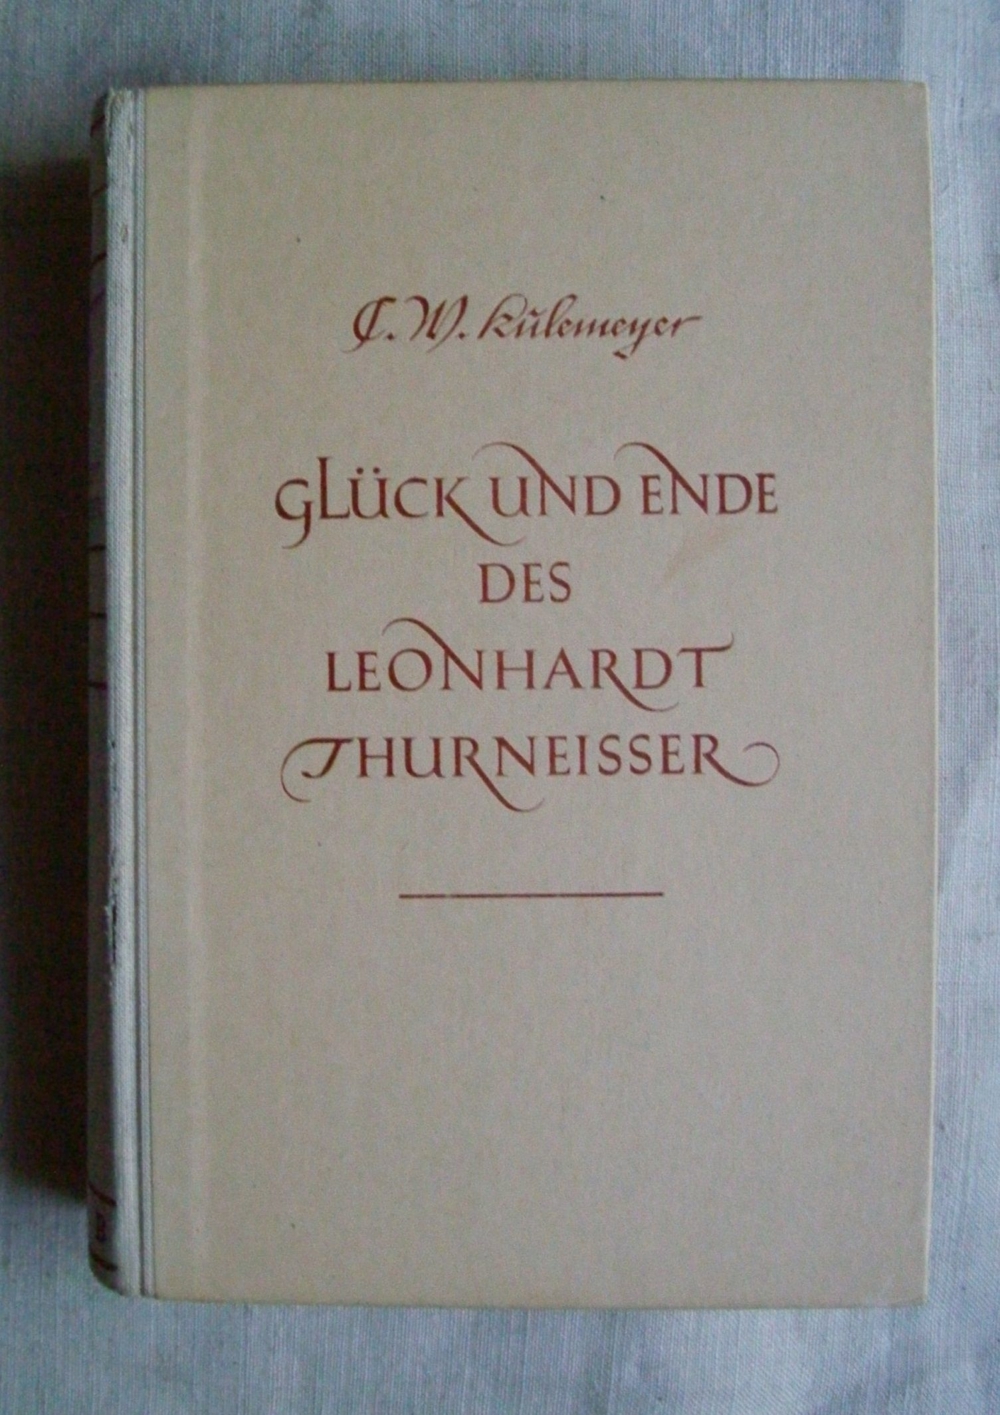 Glück und Ende des Leonhardt Thurneisser von C. W. Kulemeyer